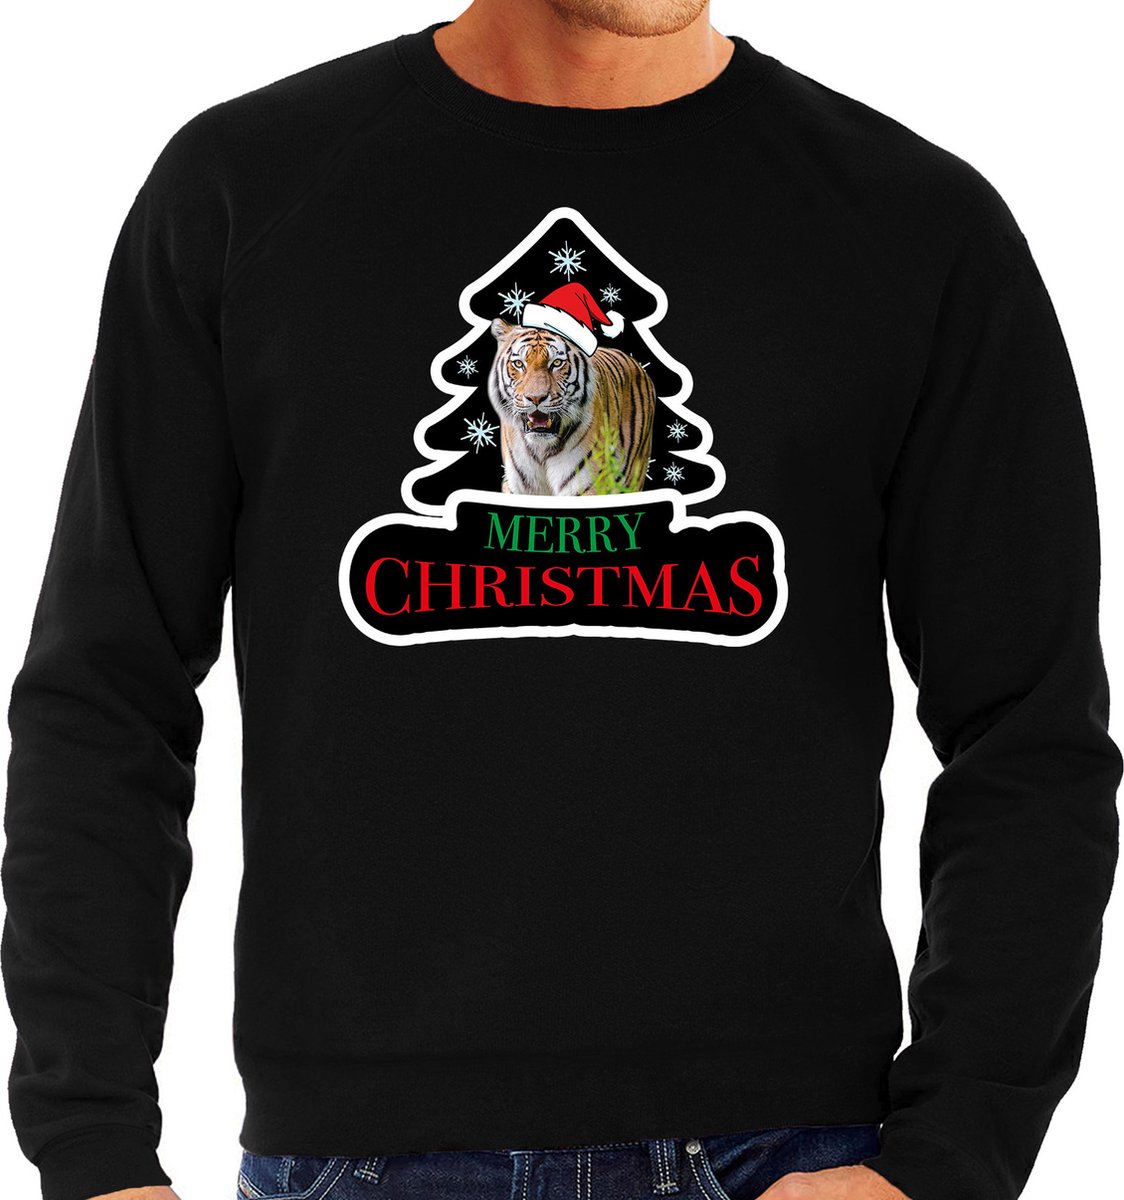 Dieren kersttrui tijger zwart heren - Foute tijgers kerstsweater - Kerst outfit dieren liefhebber XL